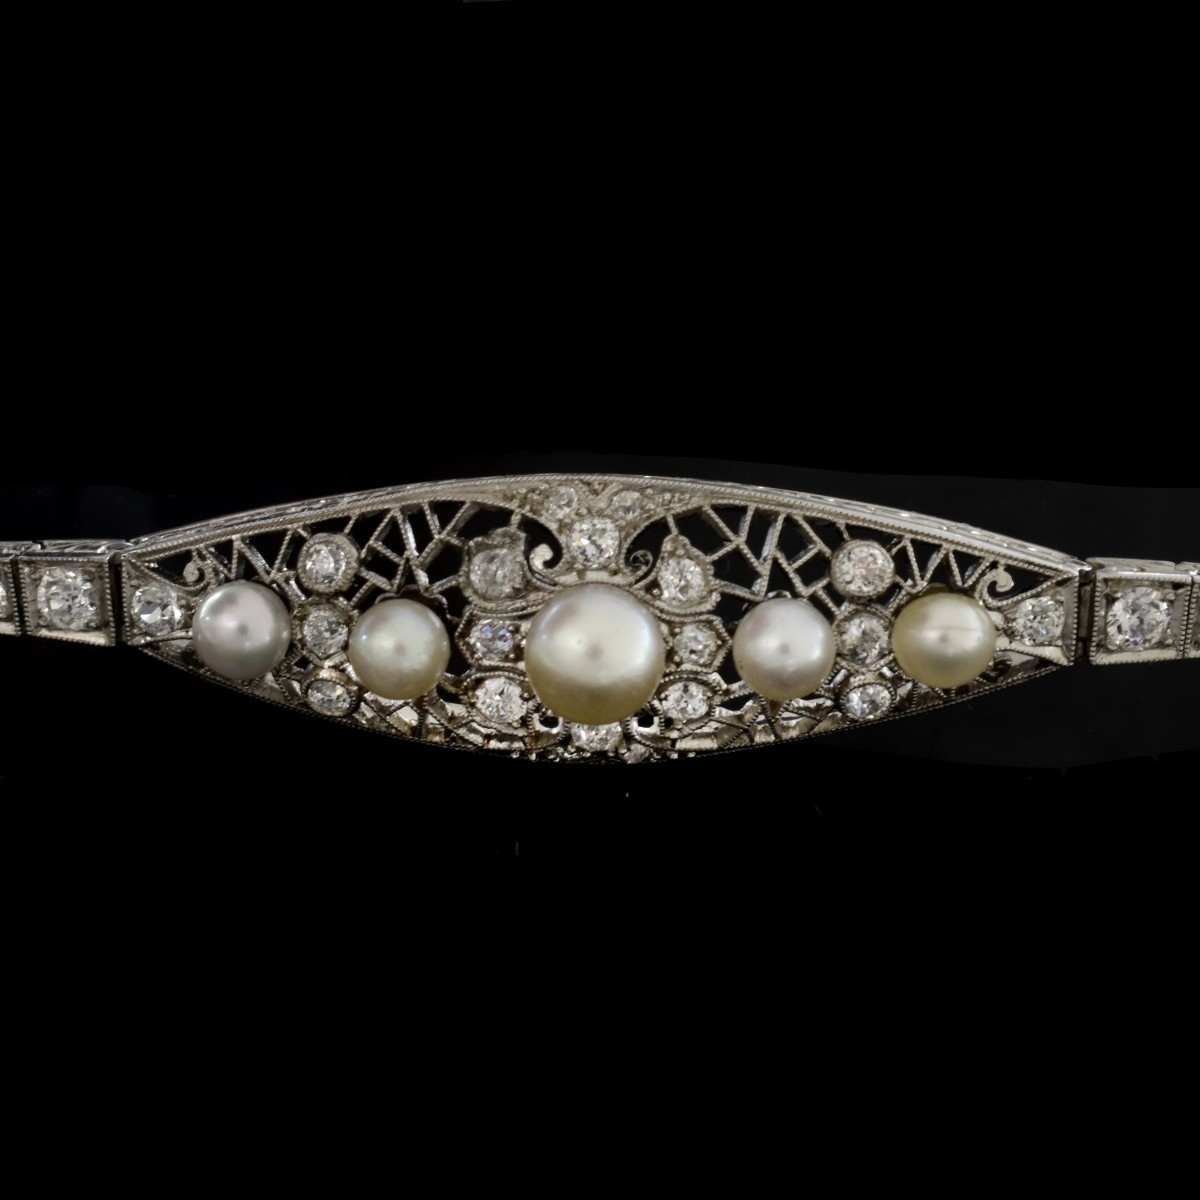 Antique Diamond, Pearl and Platinum Bracelet